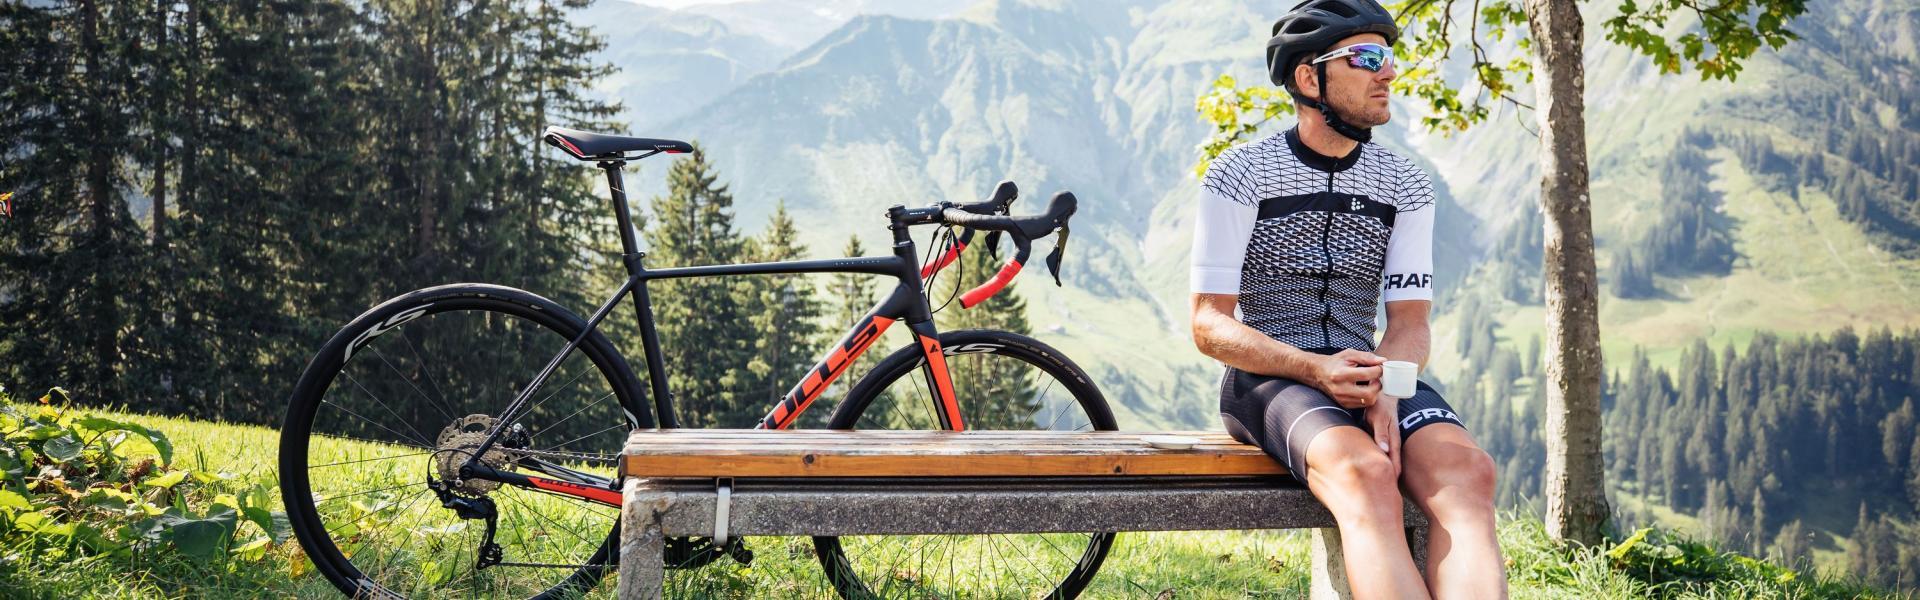 Rennradfahrer im Bregenzerwald